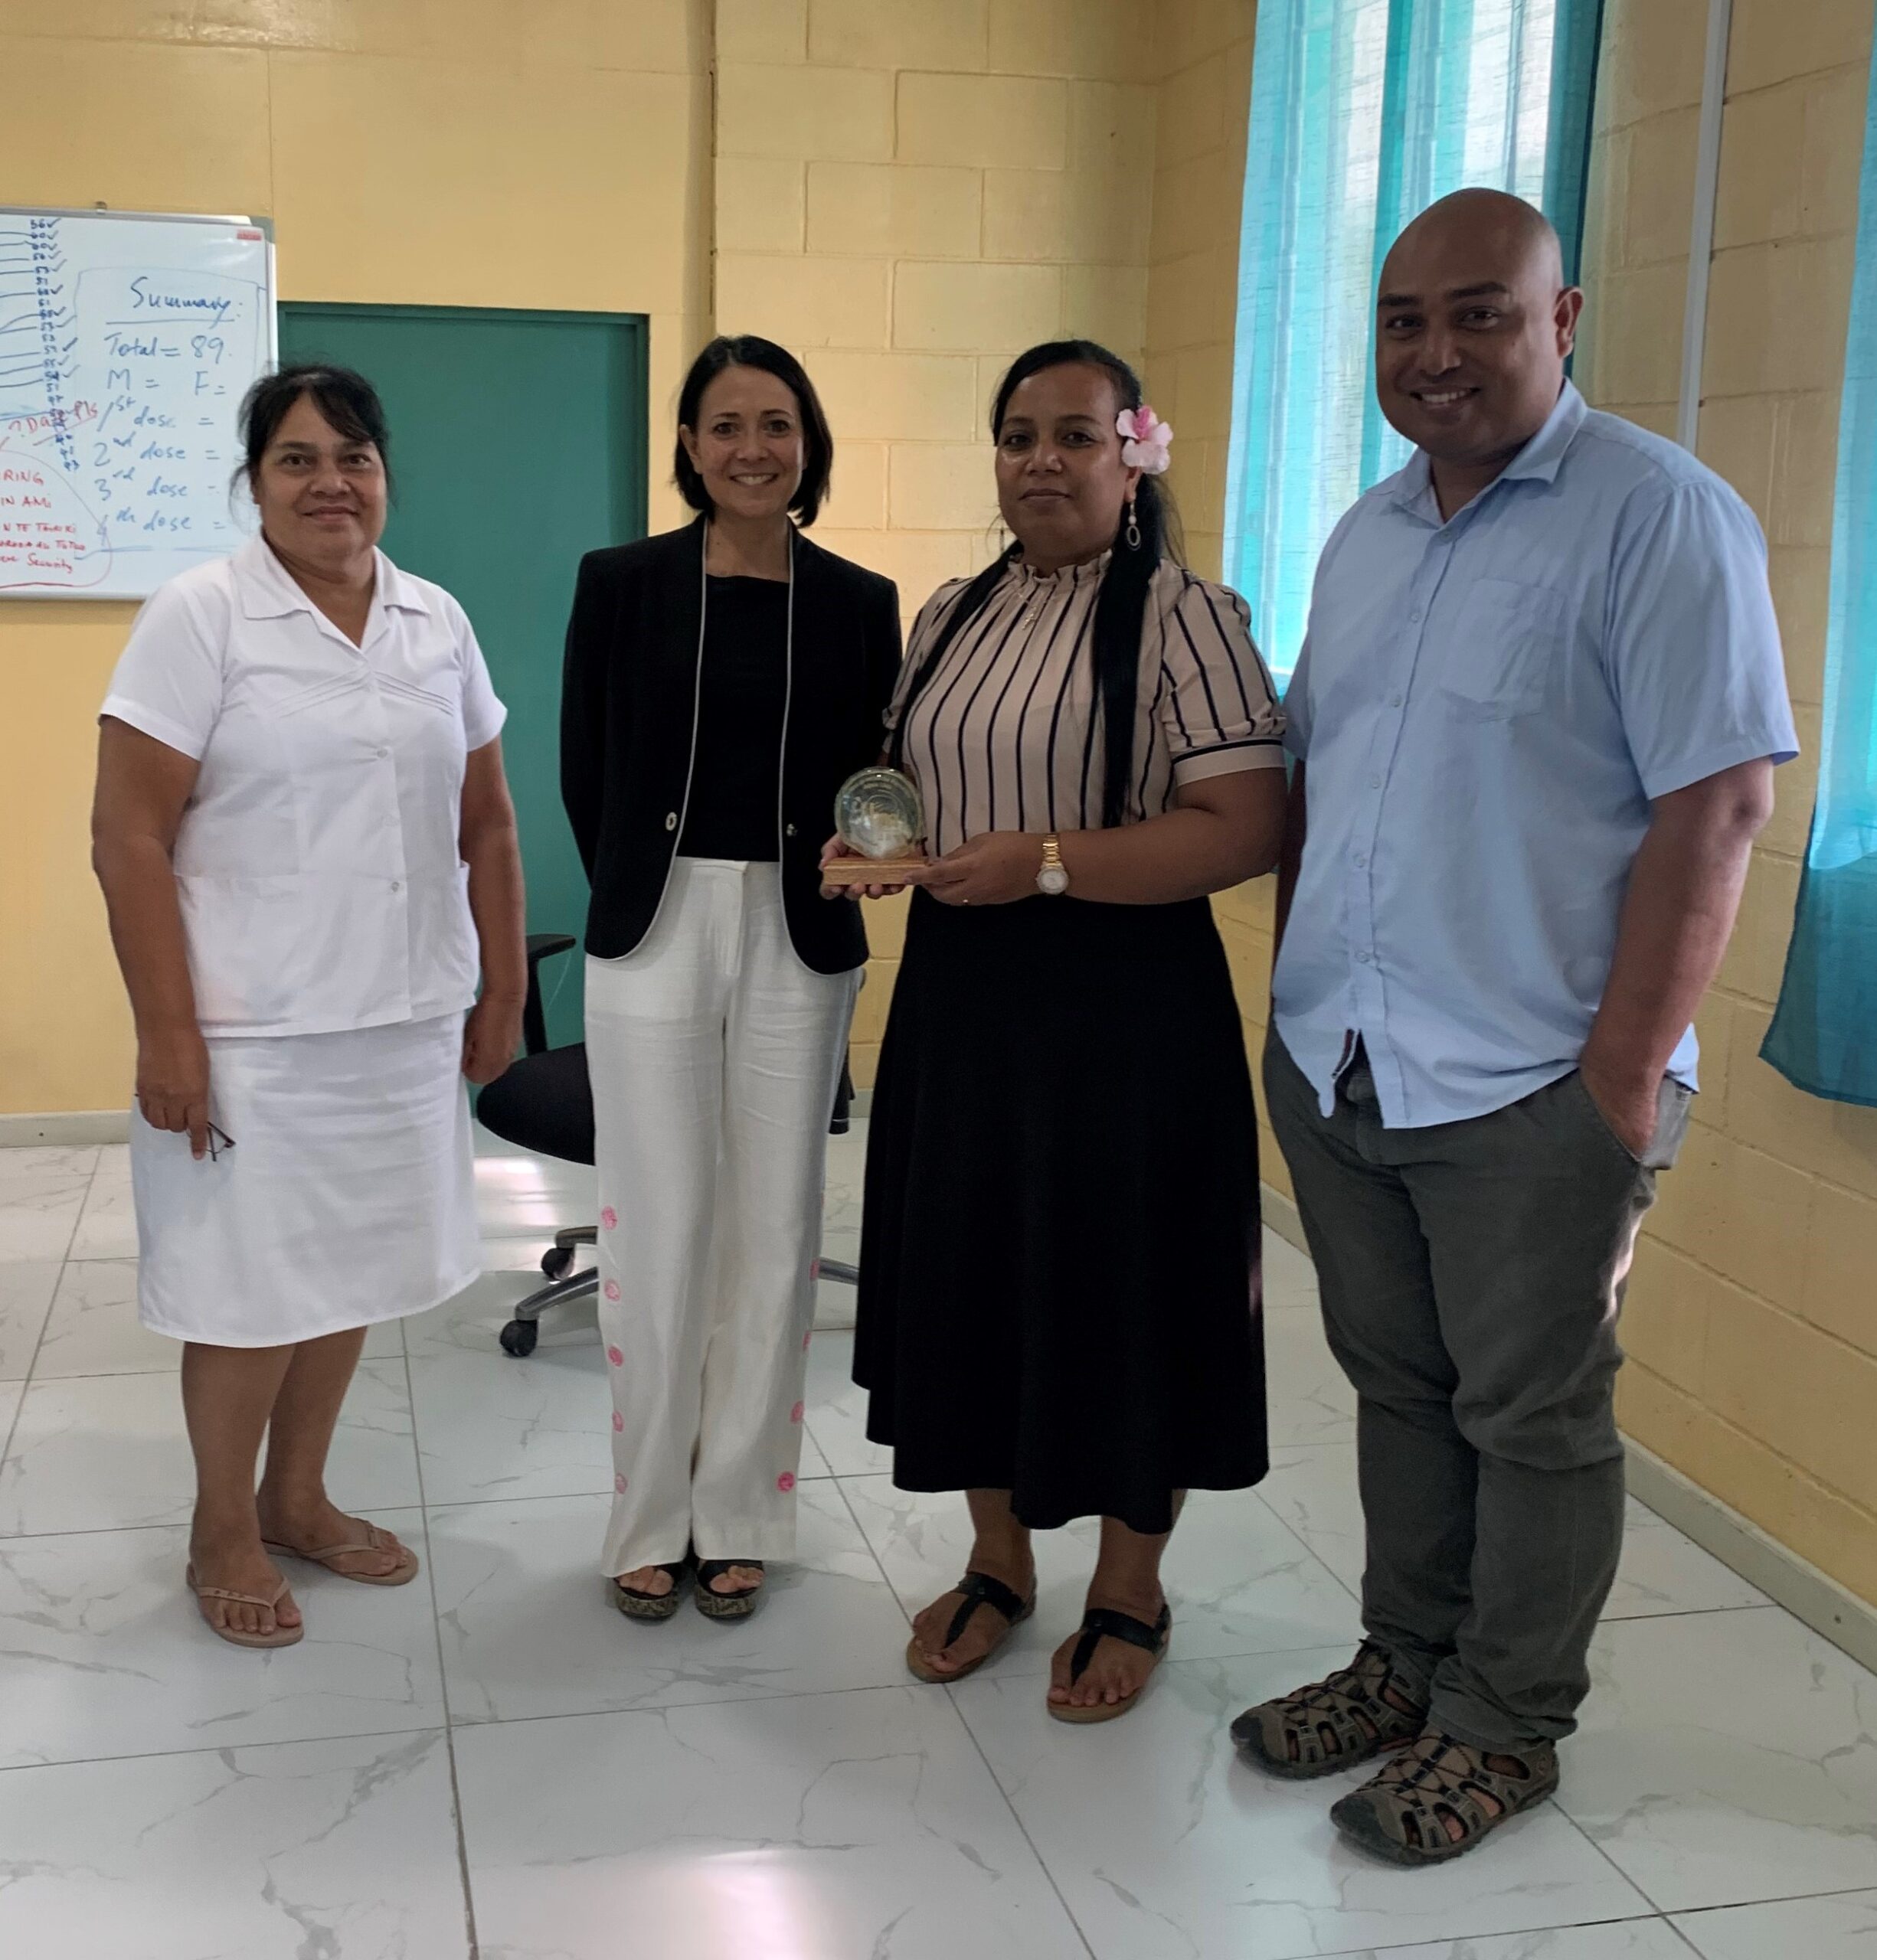 Entrevue avec les autorités de santé publique à l'hôpital de Tarawa aux îles Kiribati